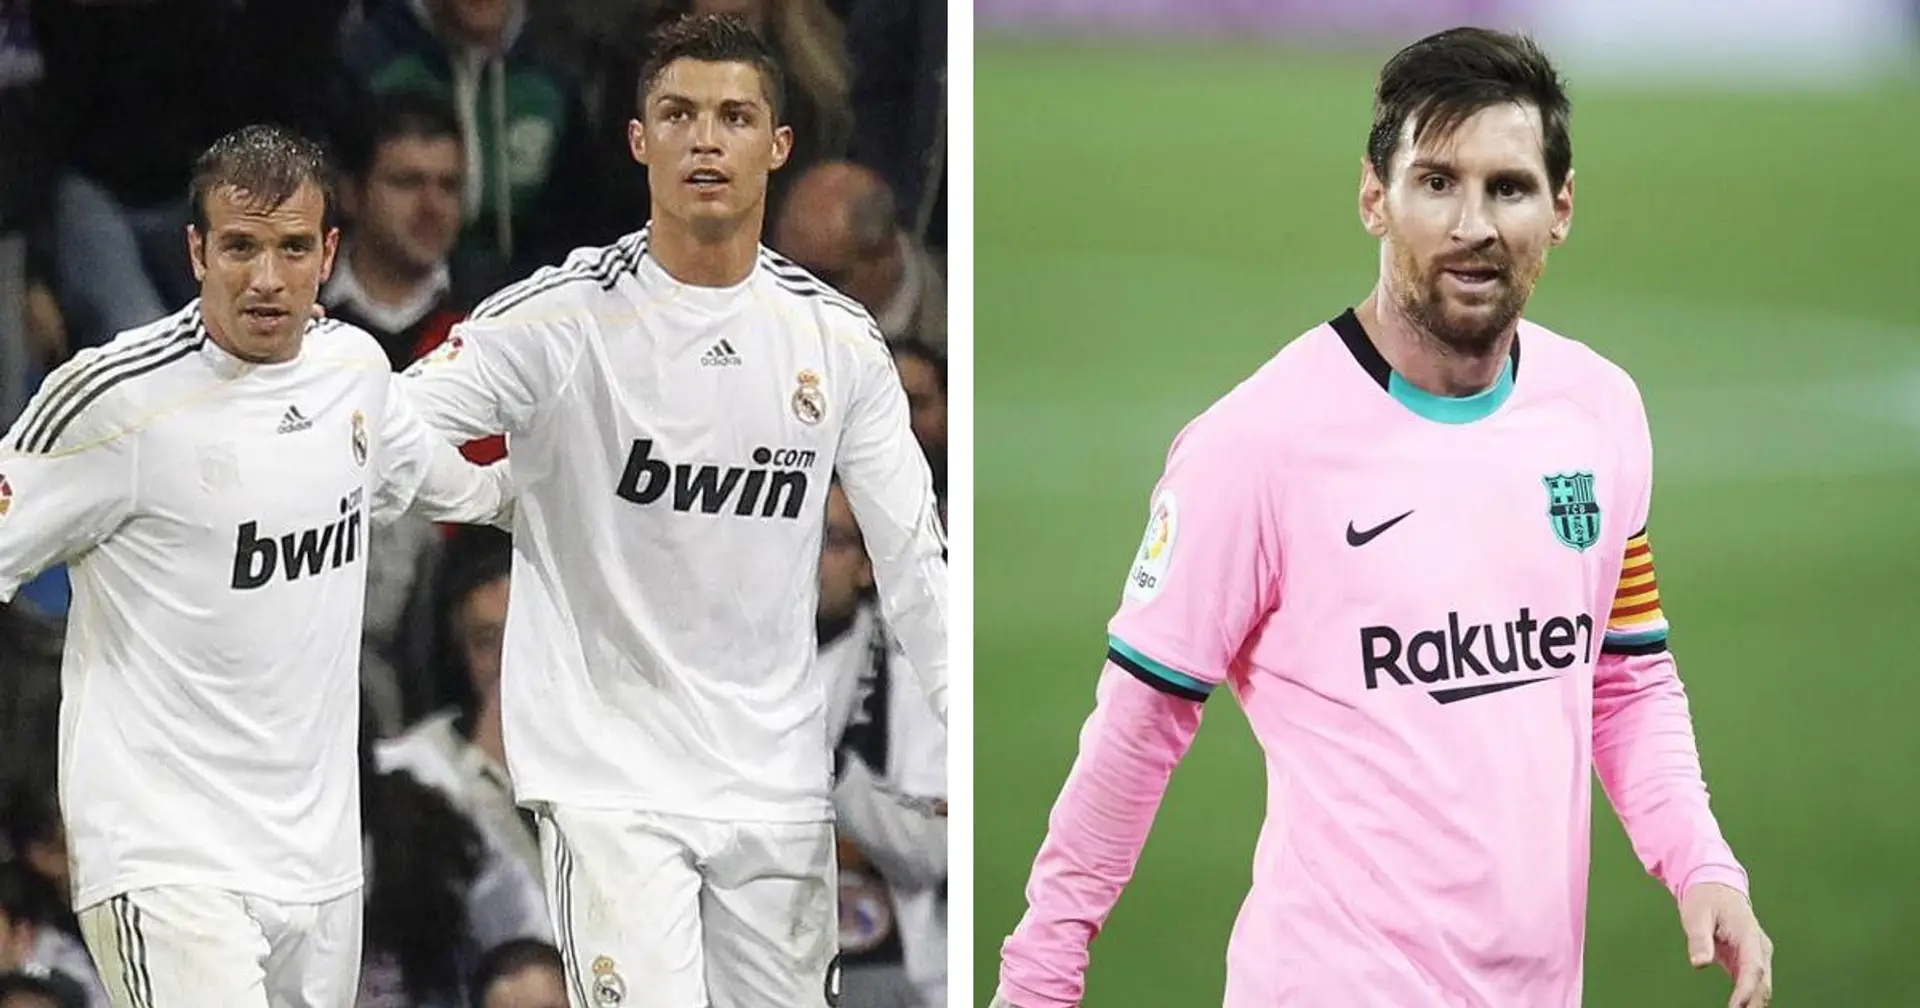 L'ancien madrilène Van der Vaart explique pourquoi il place Cristiano Ronaldo au-dessus de Leo Messi